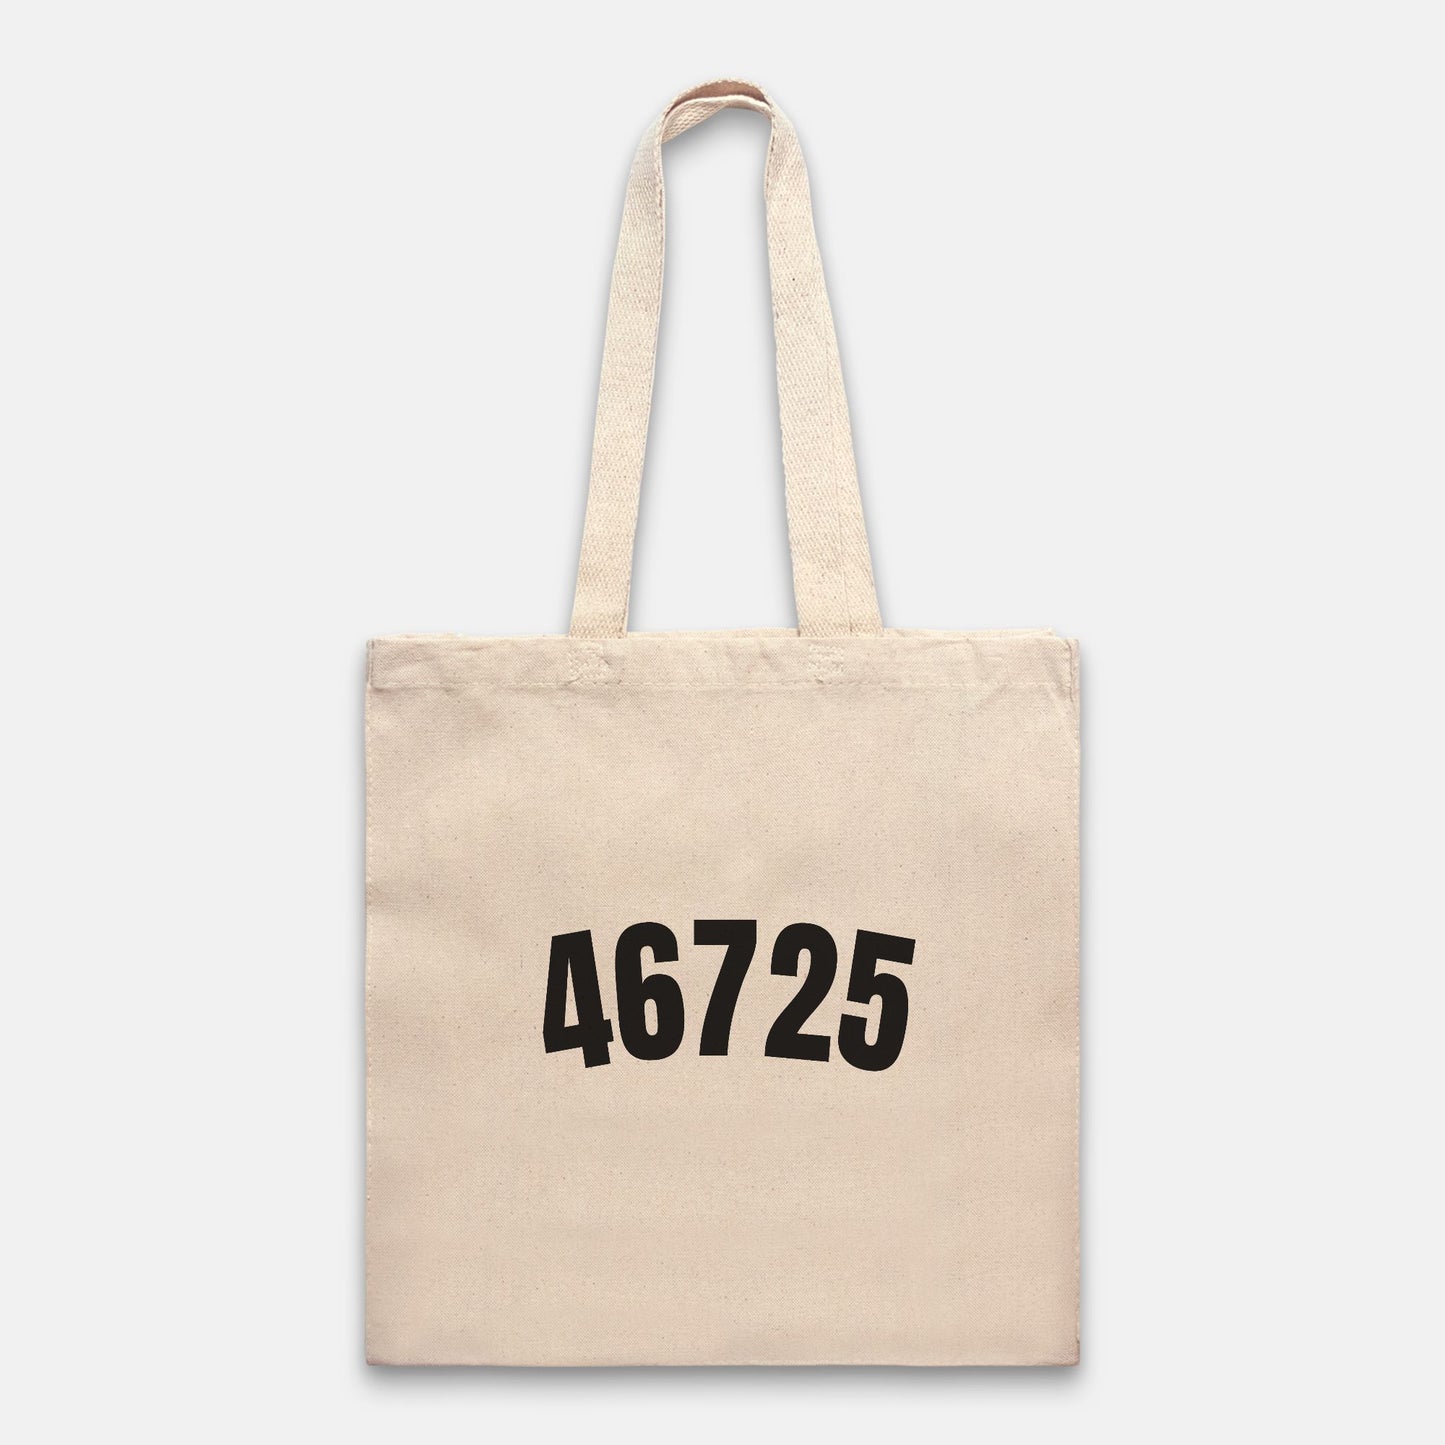 46725 Tote Bag